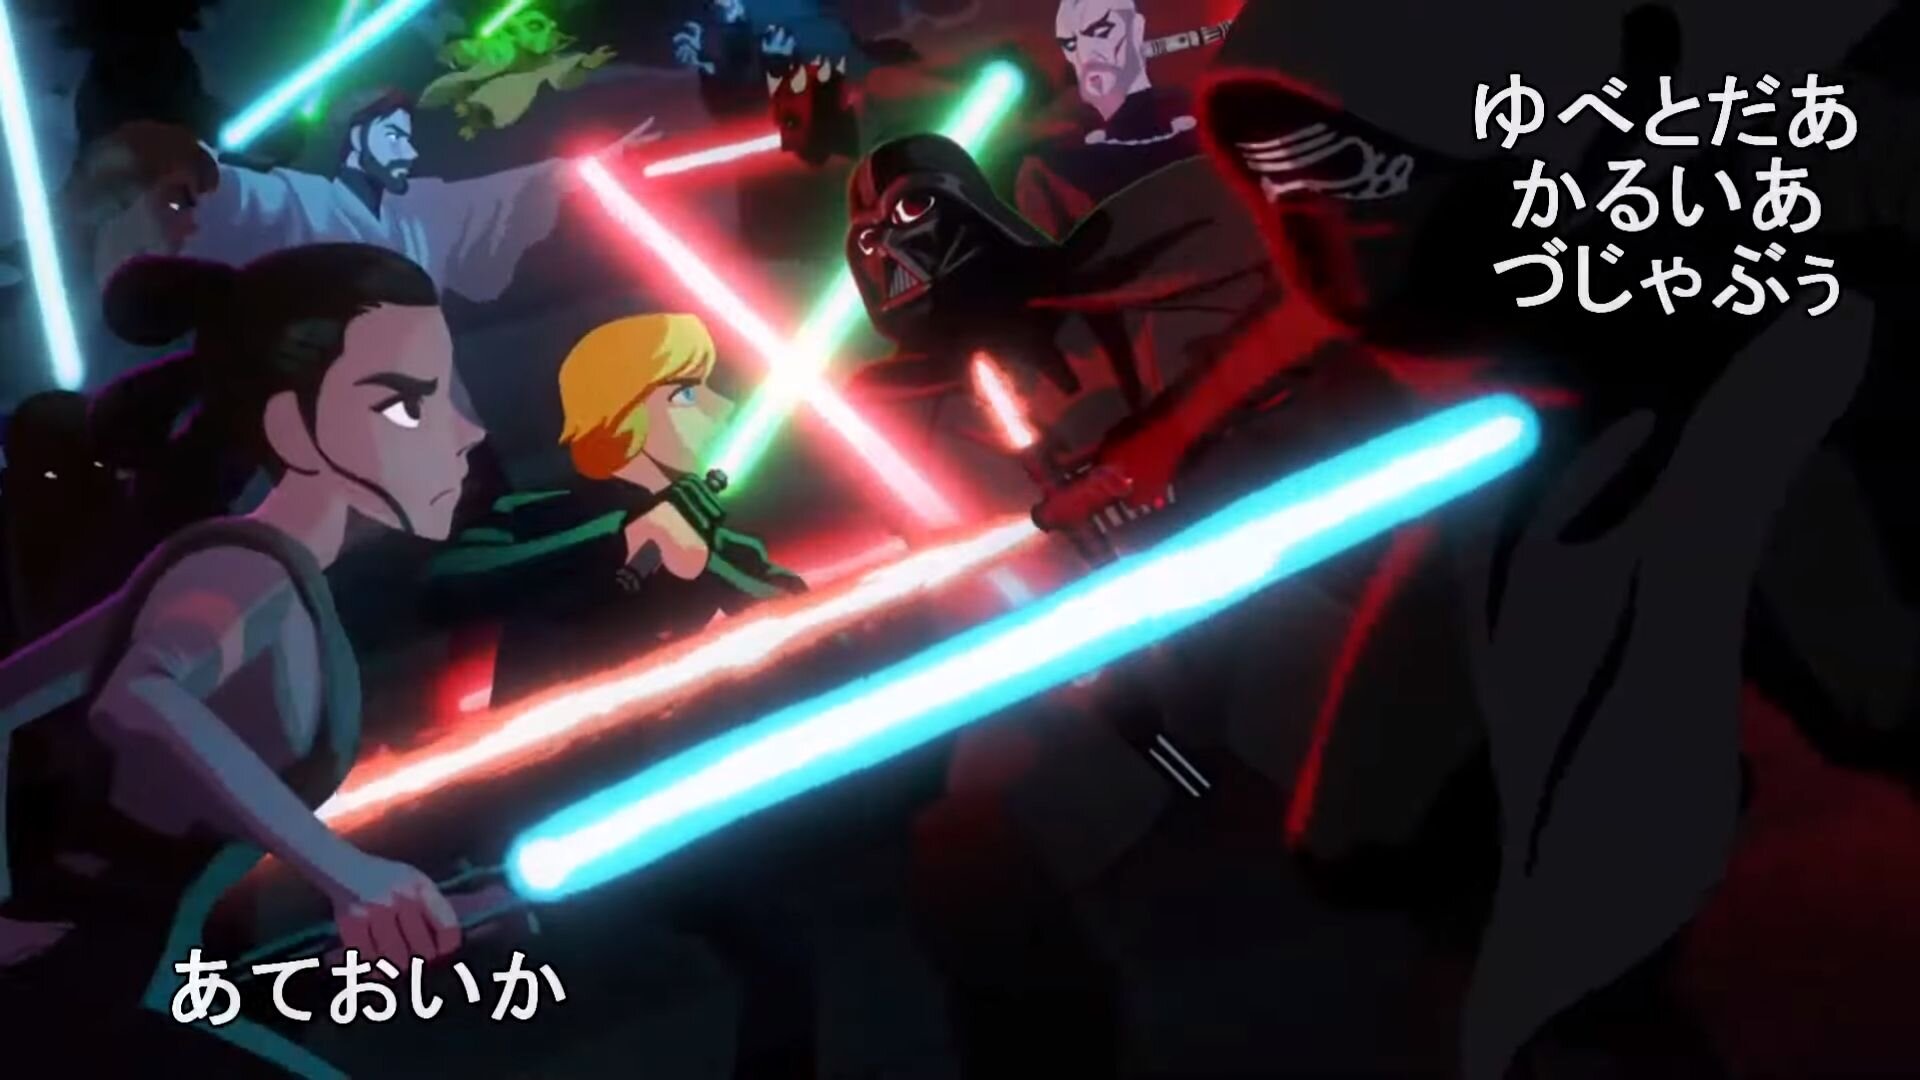 Star wars anime opening original trilogy